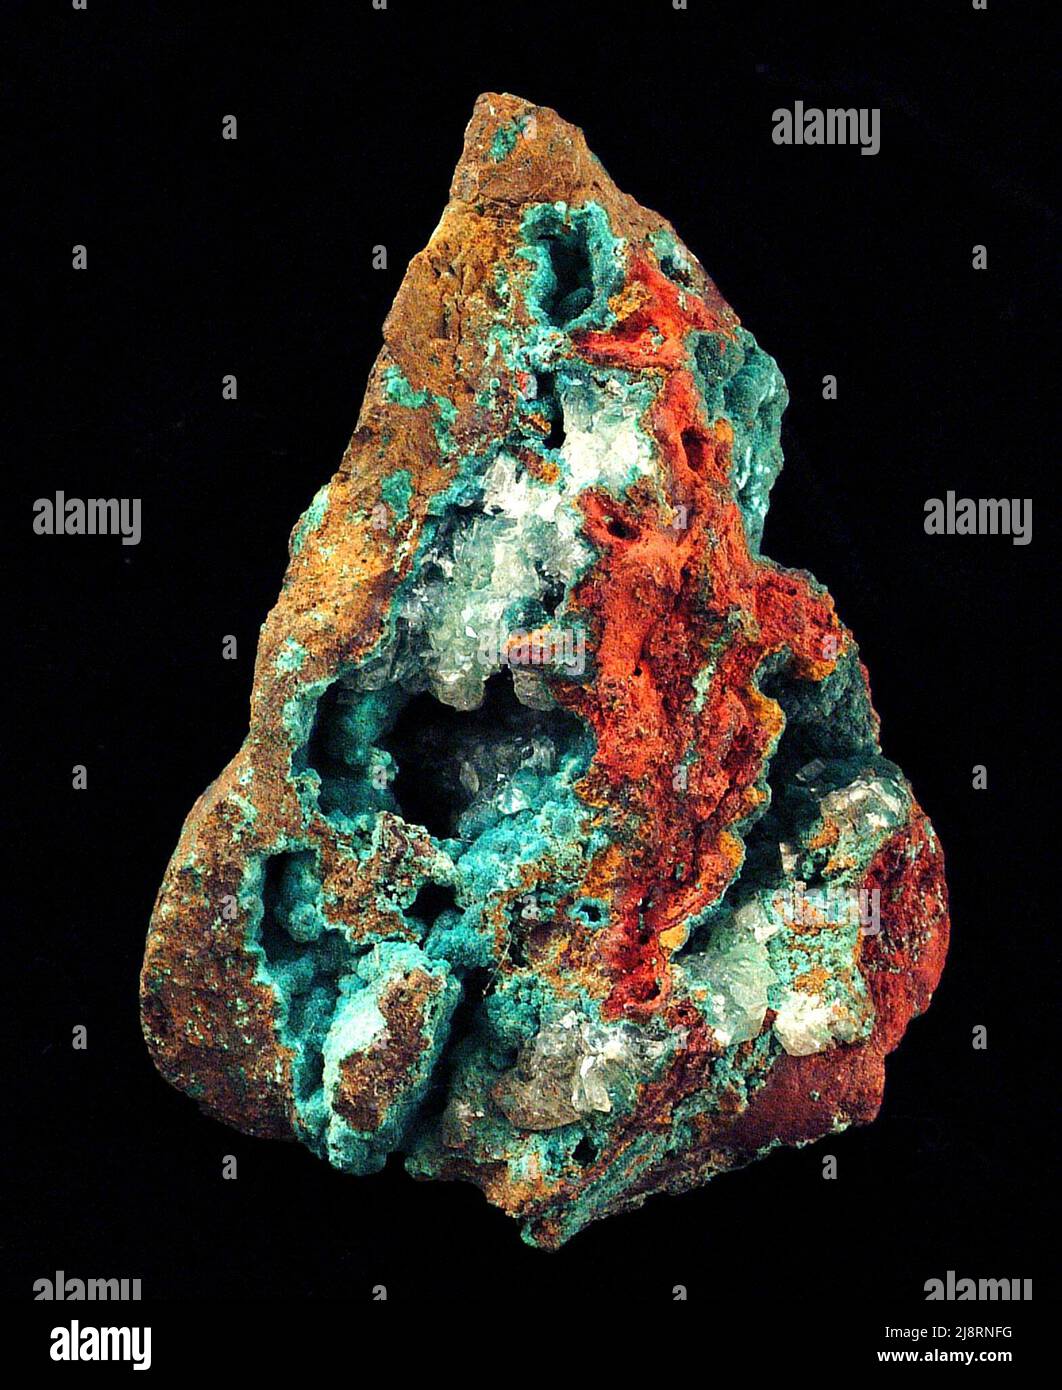 Malaquita Esta muestra de 10 cm de altura, de un lugar desconocido, contiene una notable malaquita azul turquesa, Cu2(CO3)(OH)2, con limonita marrón-amarilla y marrón-roja (una mezcla oxidada de diversos hidróxidos y óxidos de hierro). Cristales claros de calcita, CaCO3, han crecido en algunos de los espacios abiertos. Malaquita es un mineral bonito, y algunos especímenes son piedras preciosas semi-preciosas. A menudo se precipita en varras formando capas de diferentes colores, como en esta fotografía. Los cristales individuales son raros. Malaquita se encuentra comúnmente con otros minerales hermosos, incluyendo azurita y chrysocolla. Foto de stock